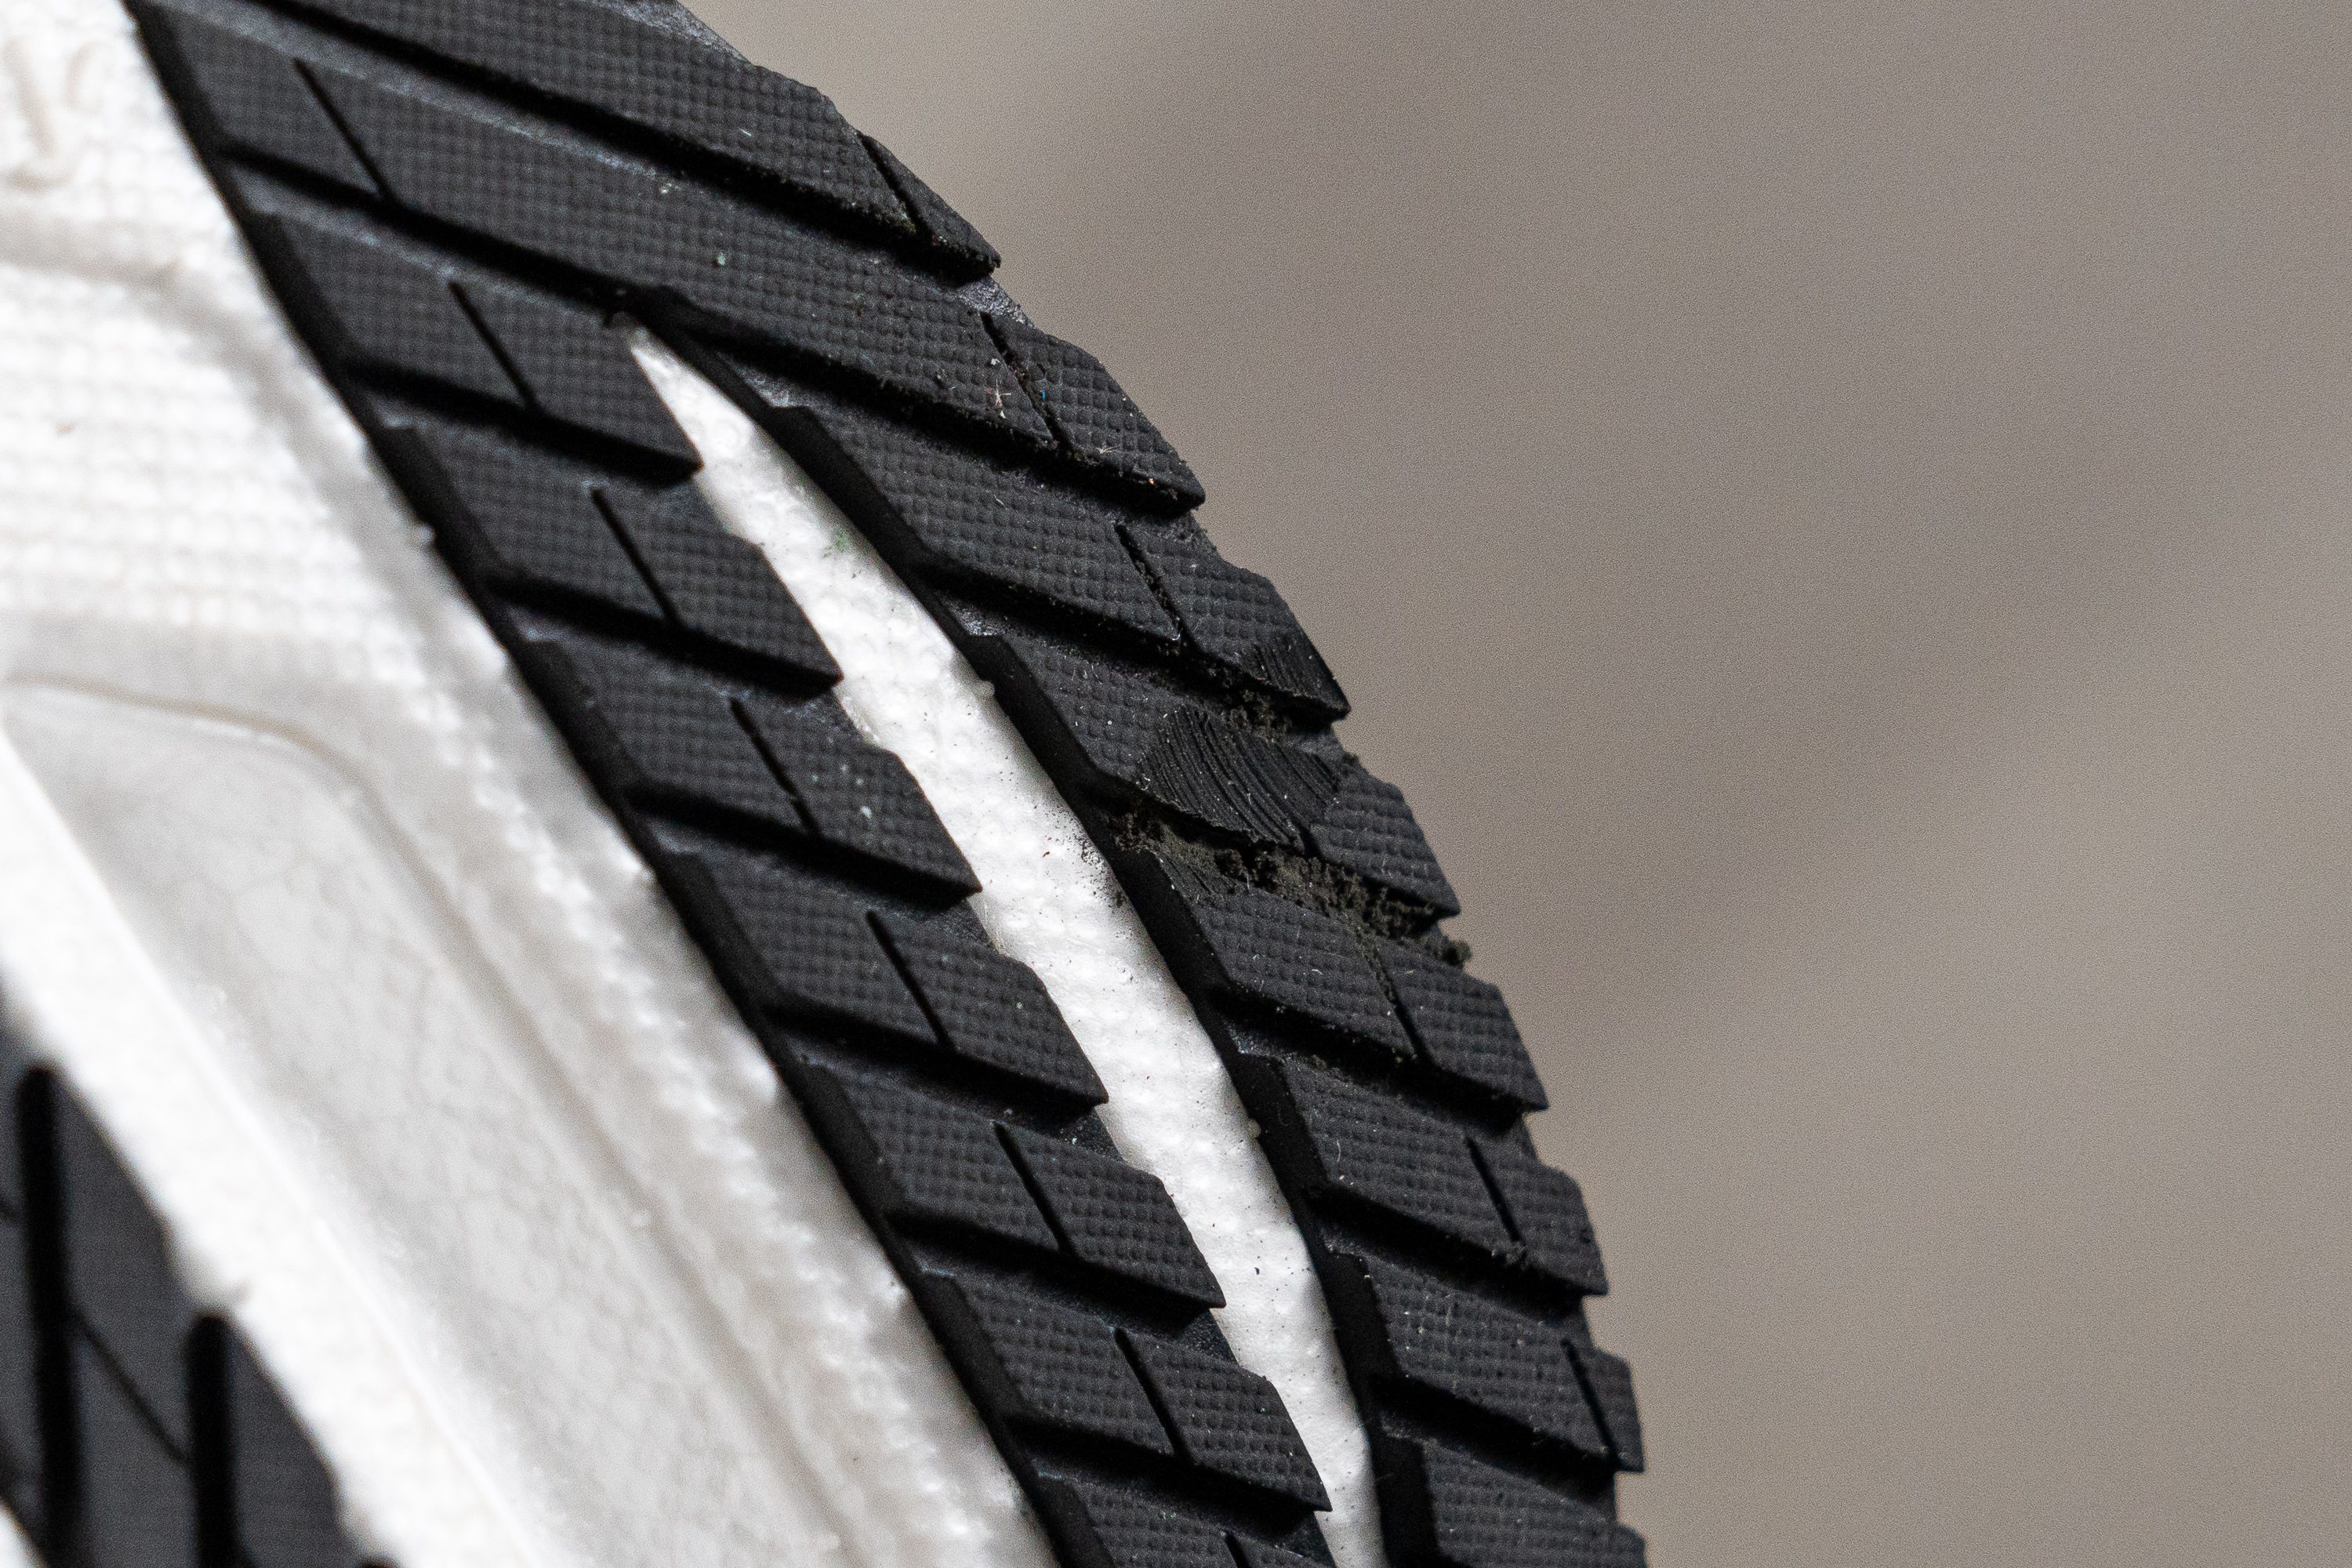 zapatillas de running minimalistas saucony asfalto pie normal más de 100 Outsole durability